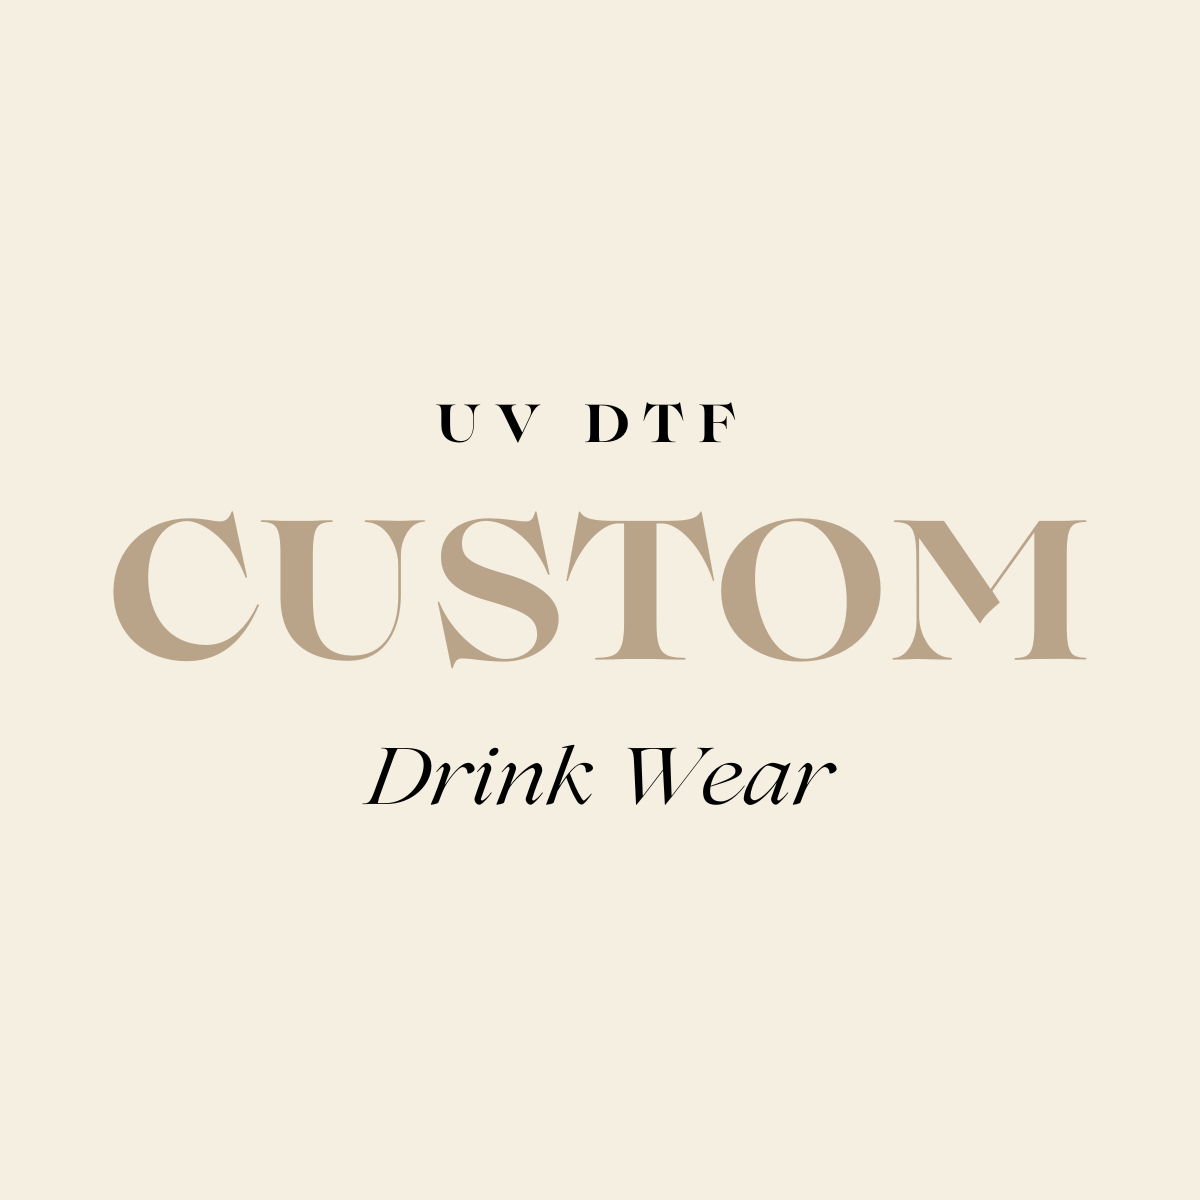 Custom Drink wear